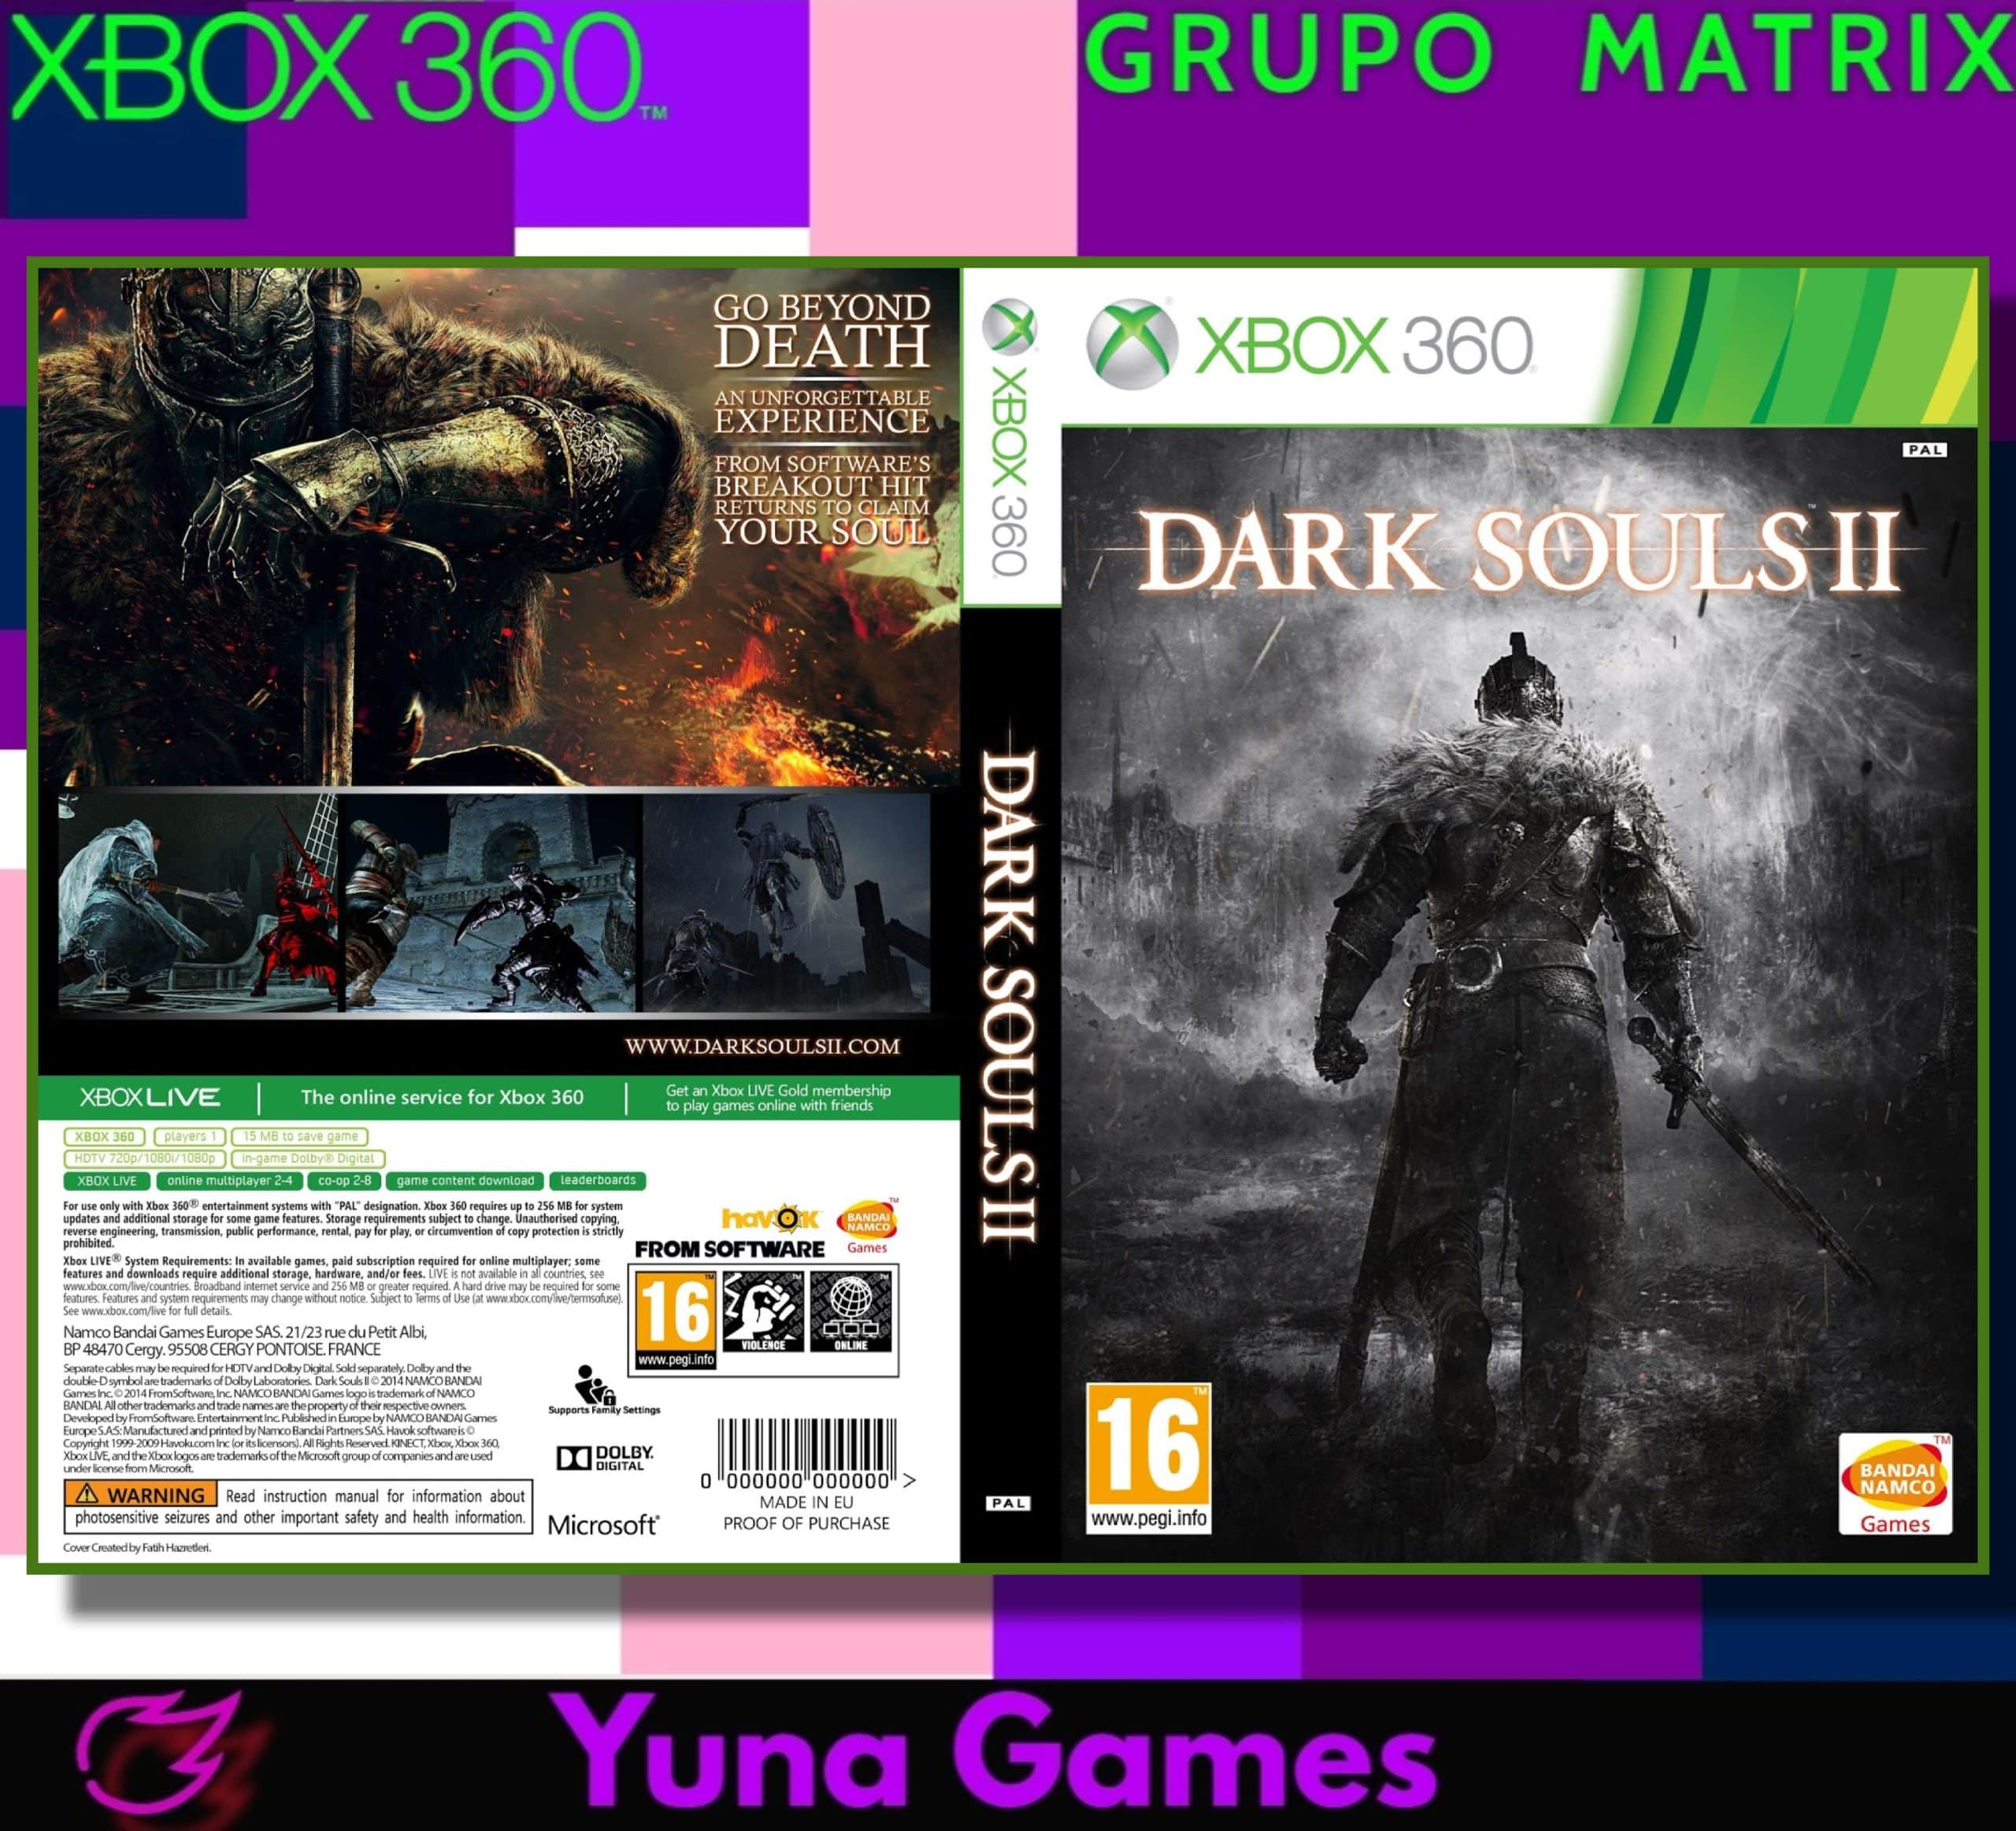 Jogos Digital Para Xbox 360 Bloqueado